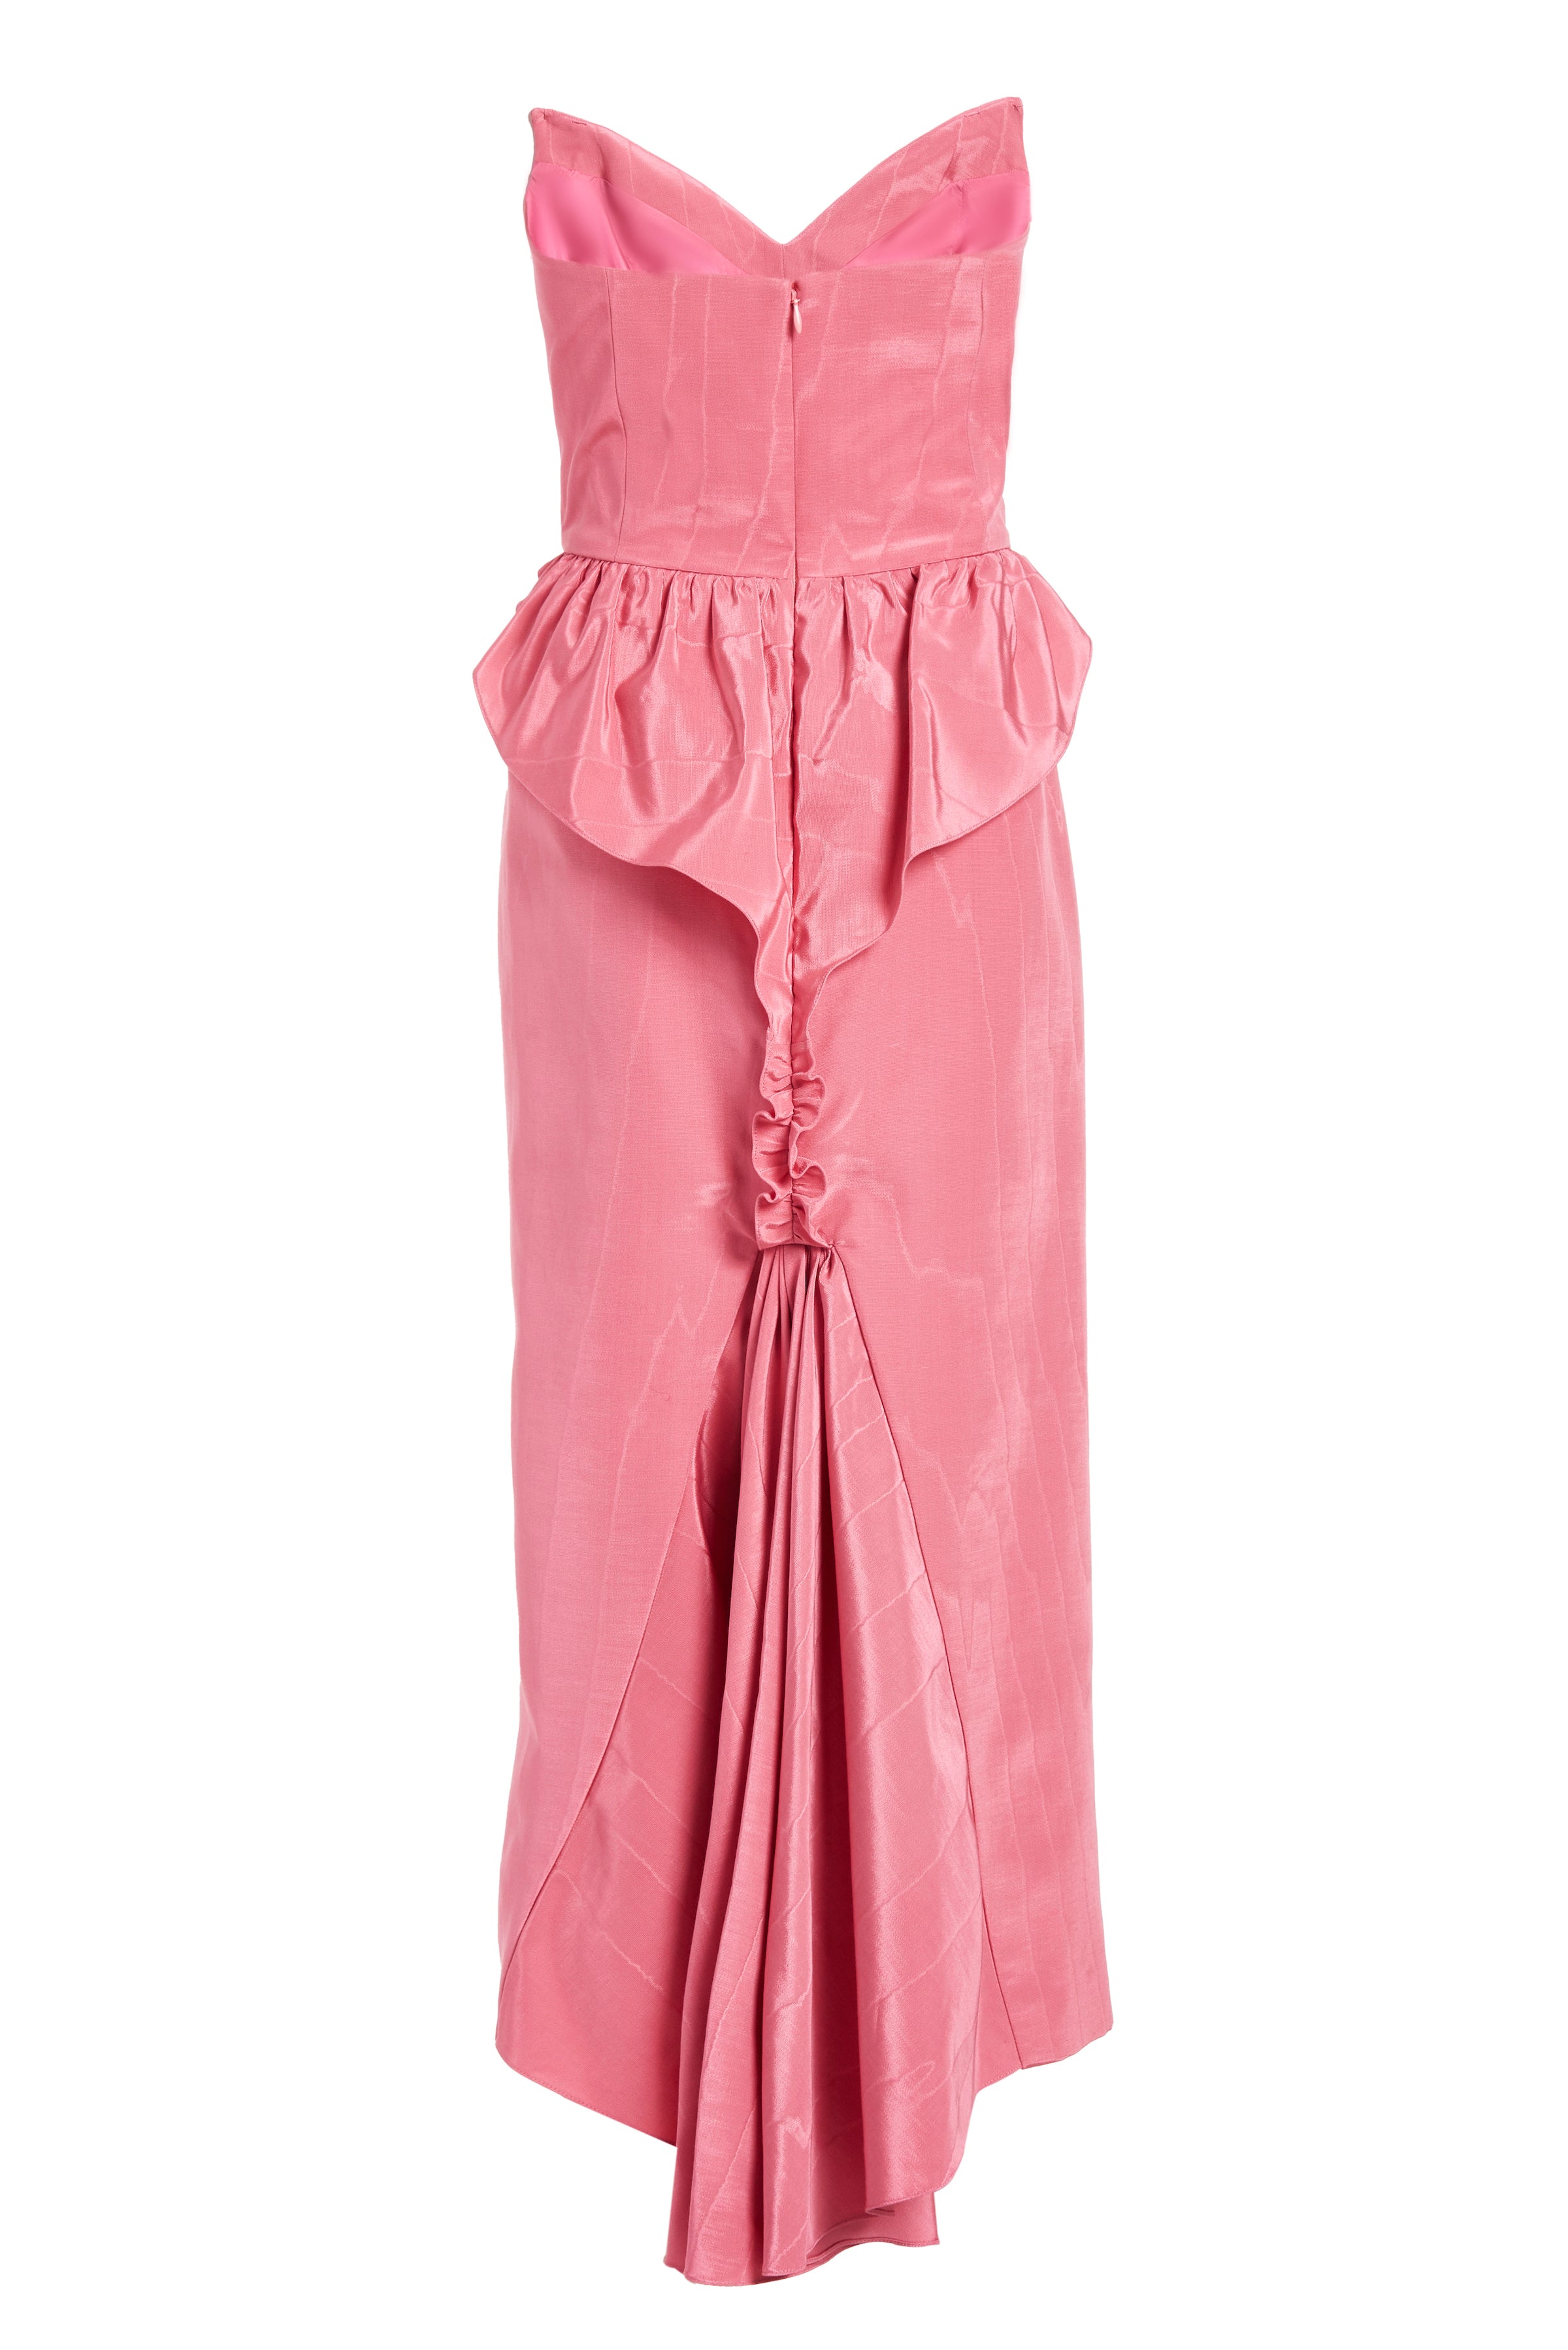 Lottie Pink Strapless Midi Dress